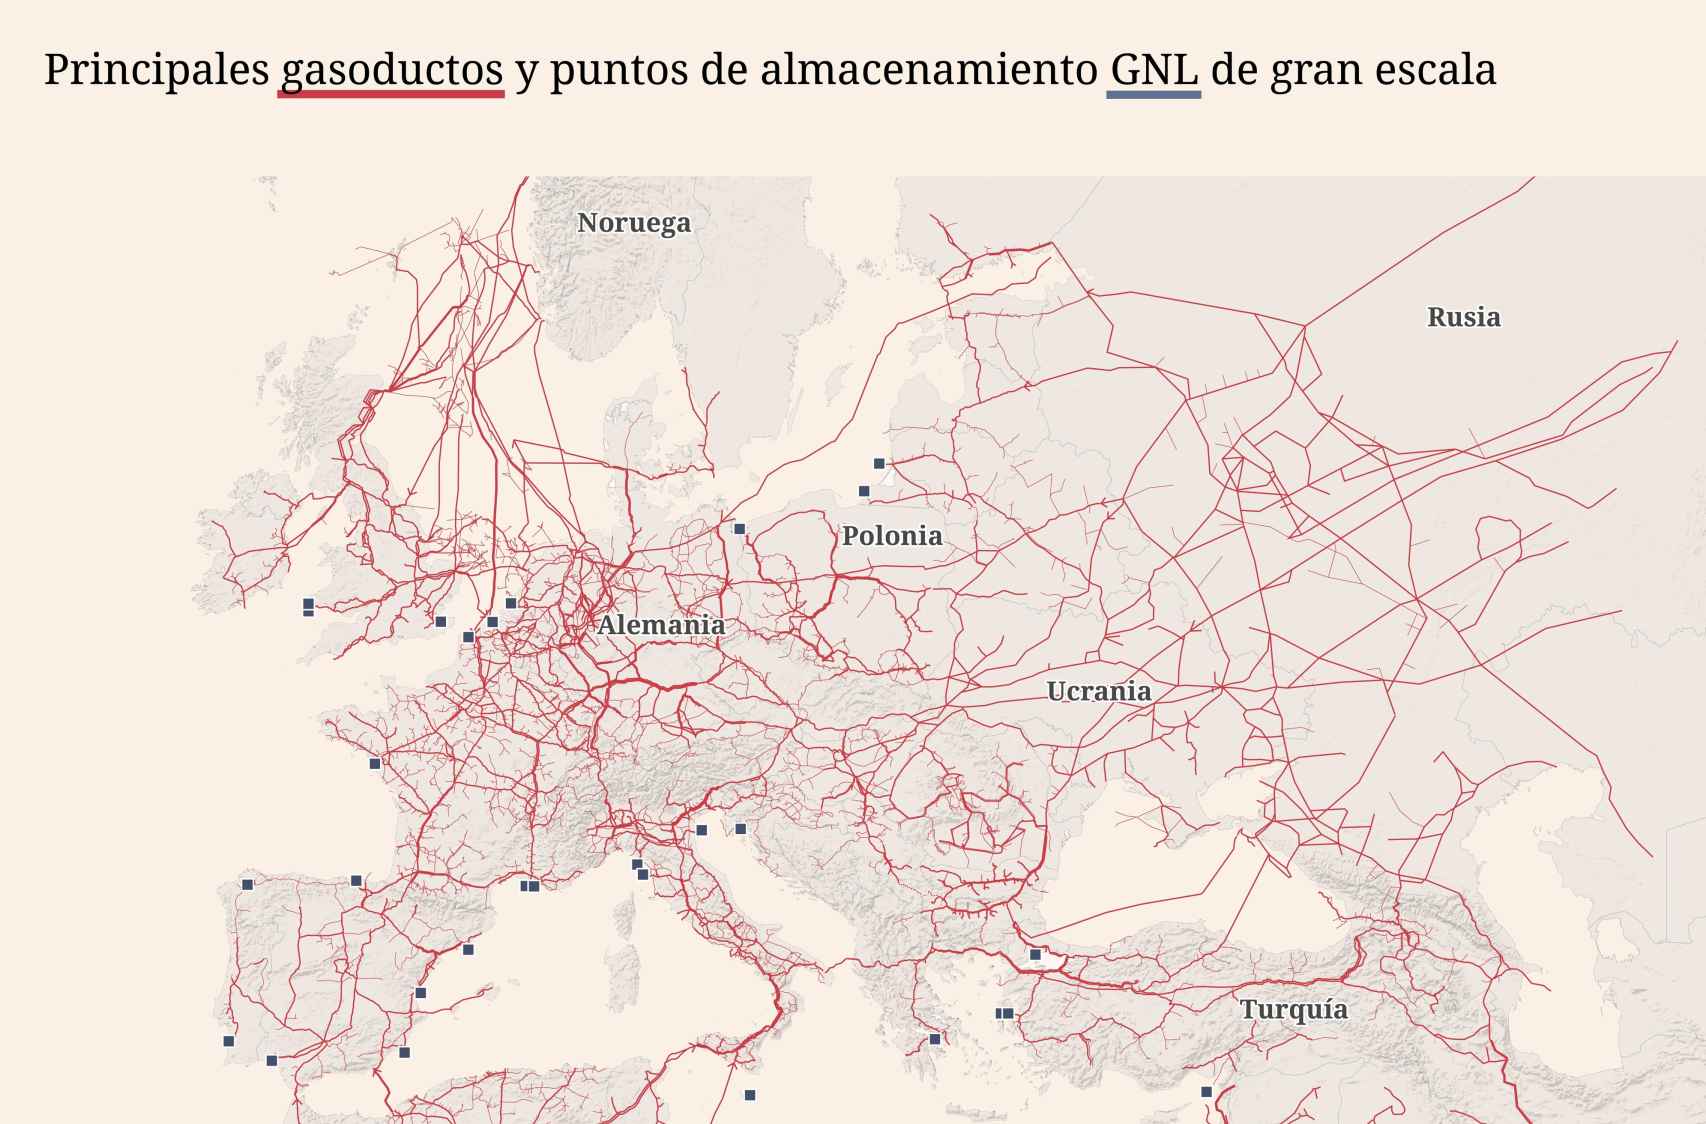 Principales gasoductos y puntos de almacenamiento GNL a gran escala